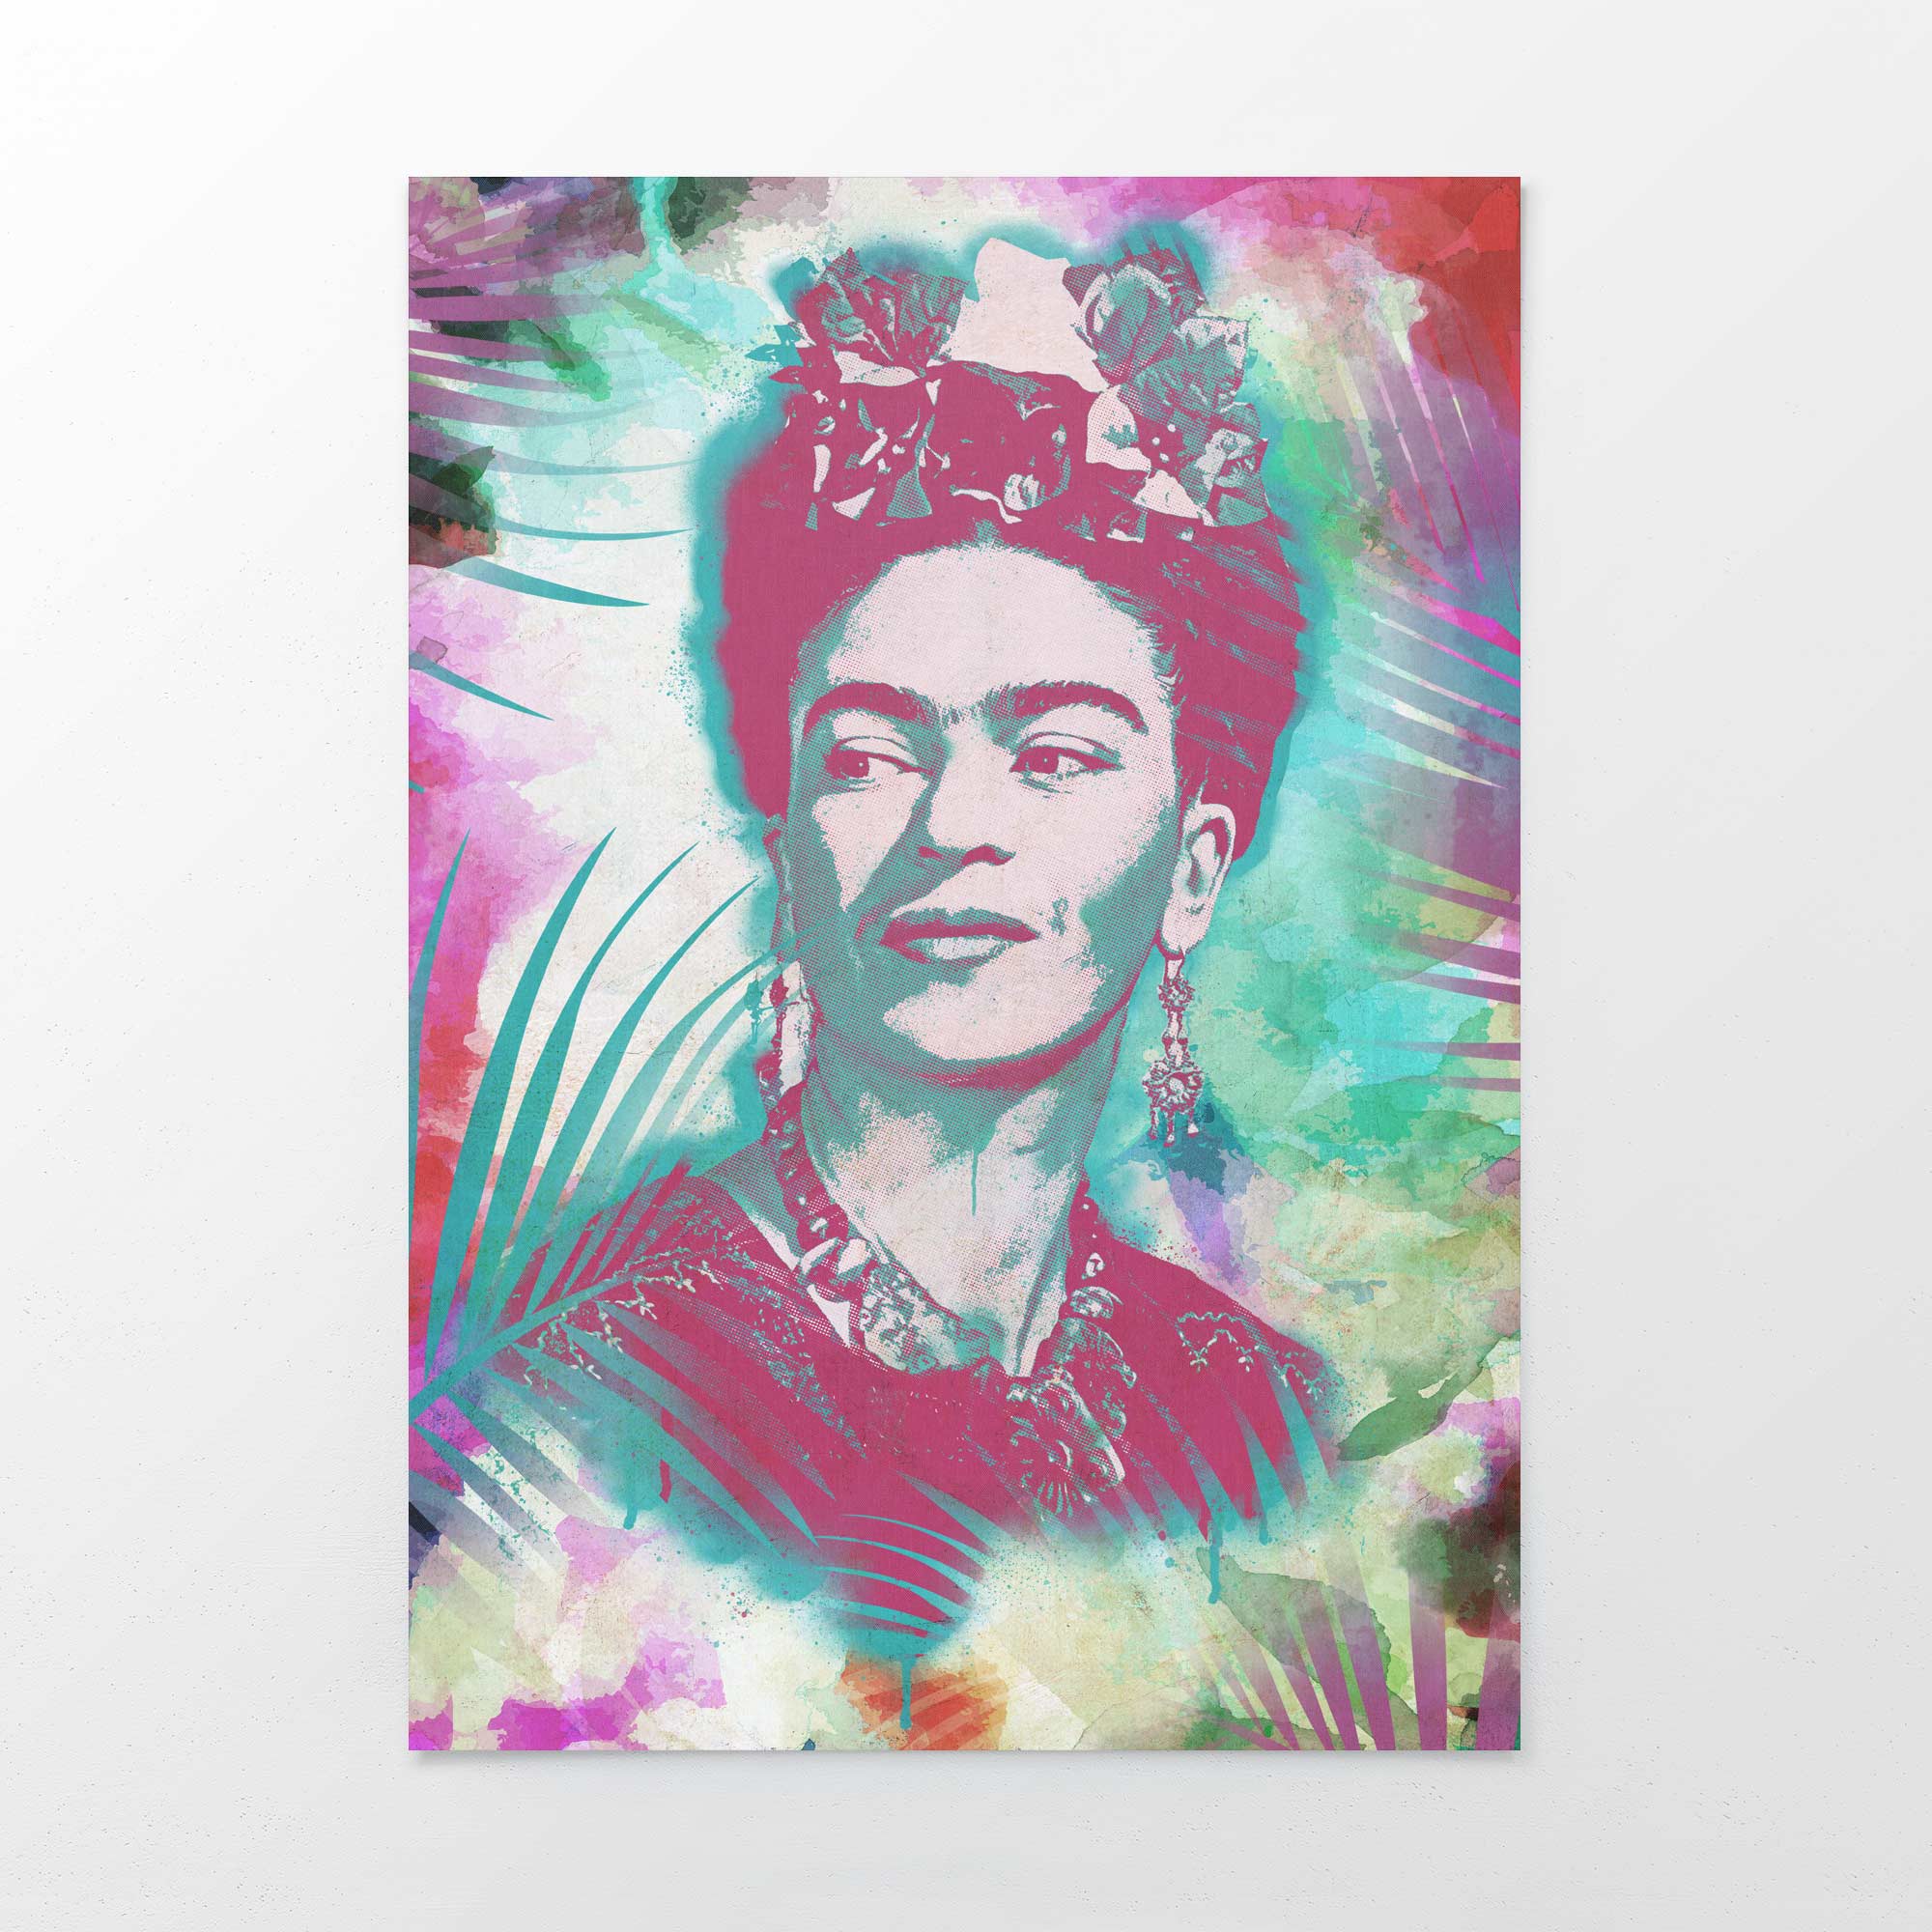 Frida Kahlo prints for sale